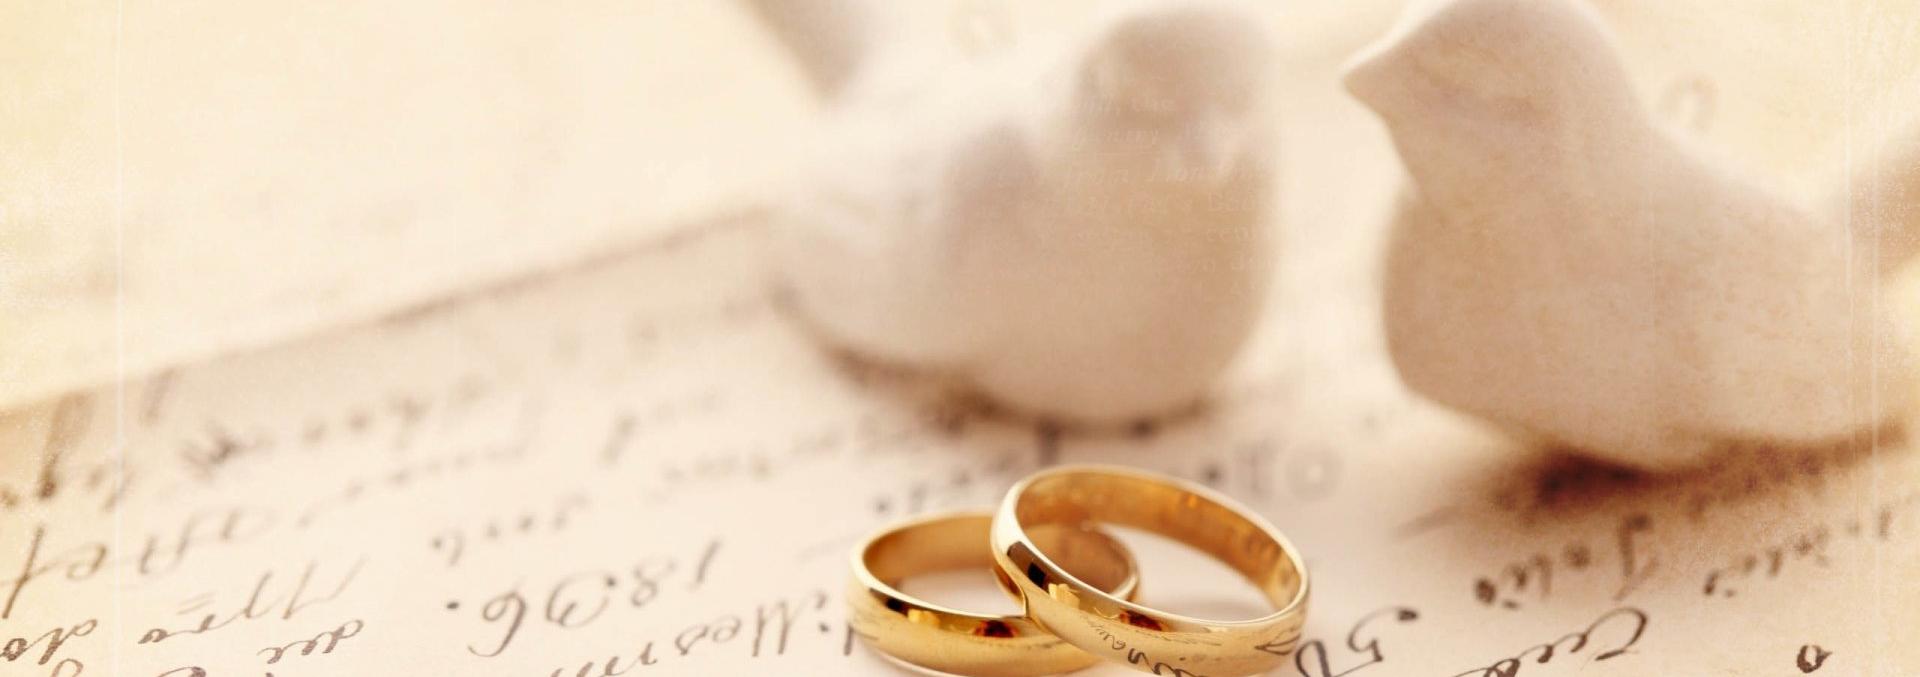 В ноябре отделом загс Новогрудского райисполкома зарегистрировано 11 браков